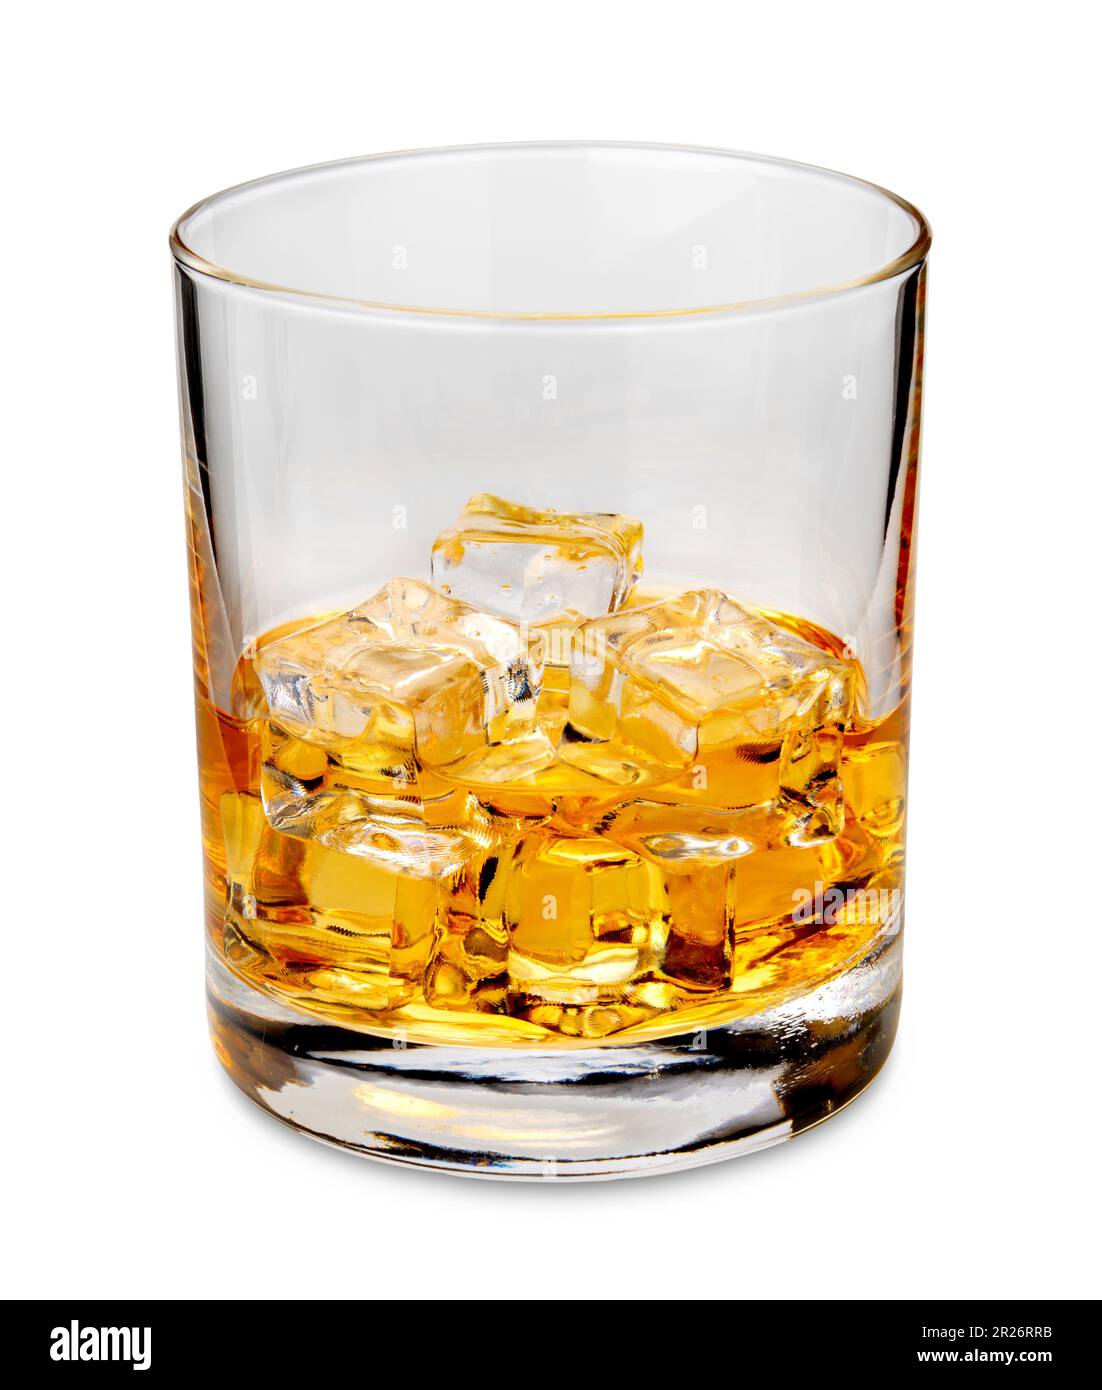 Whisky sur les rochers. Verre de whisky ou de bourbon du Kentucky américain avec glaçons isolés sur du blanc avec passe-cheveux inclus Banque D'Images